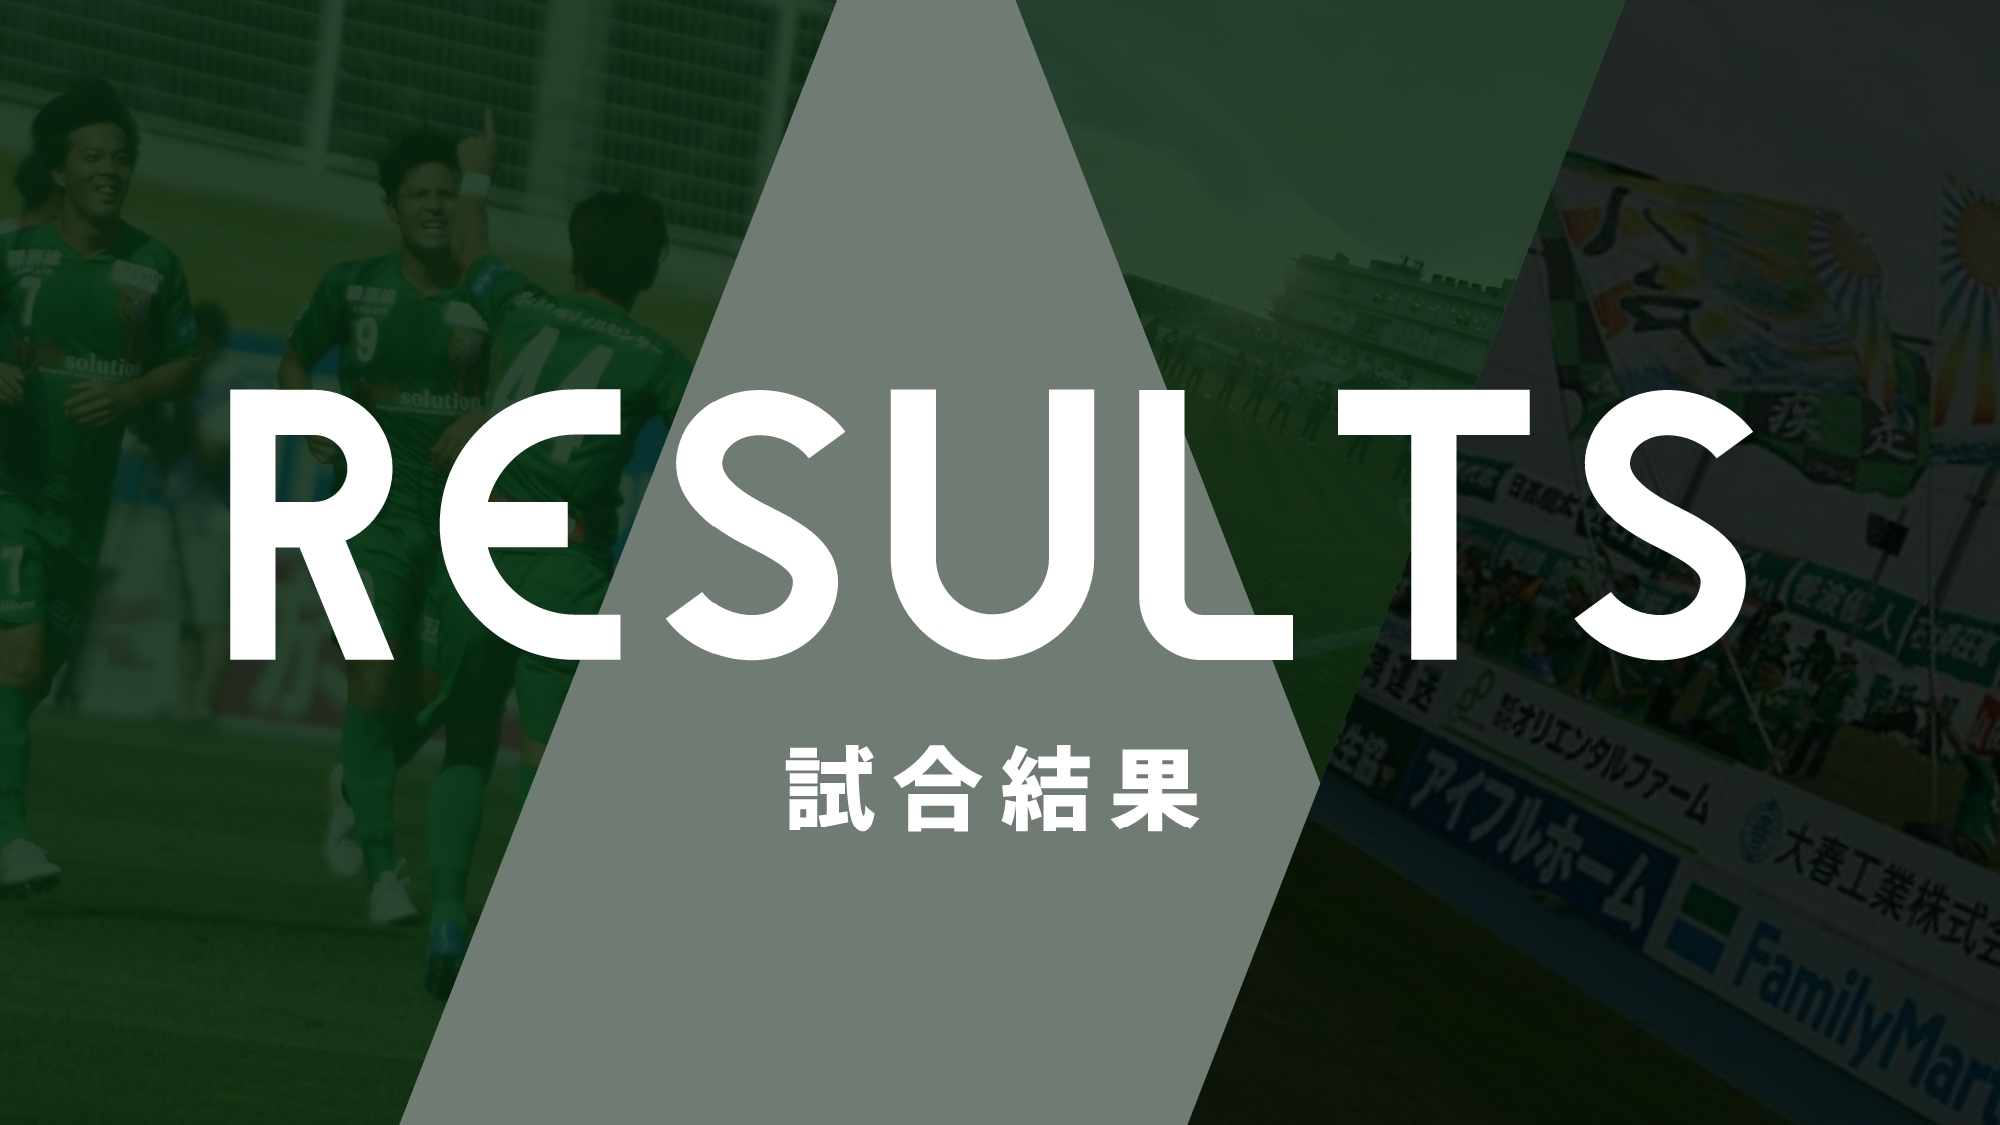 3 14岐阜戦 試合結果 コメント フォトギャラリー ヴァンラーレ八戸fcオフィシャルサイト